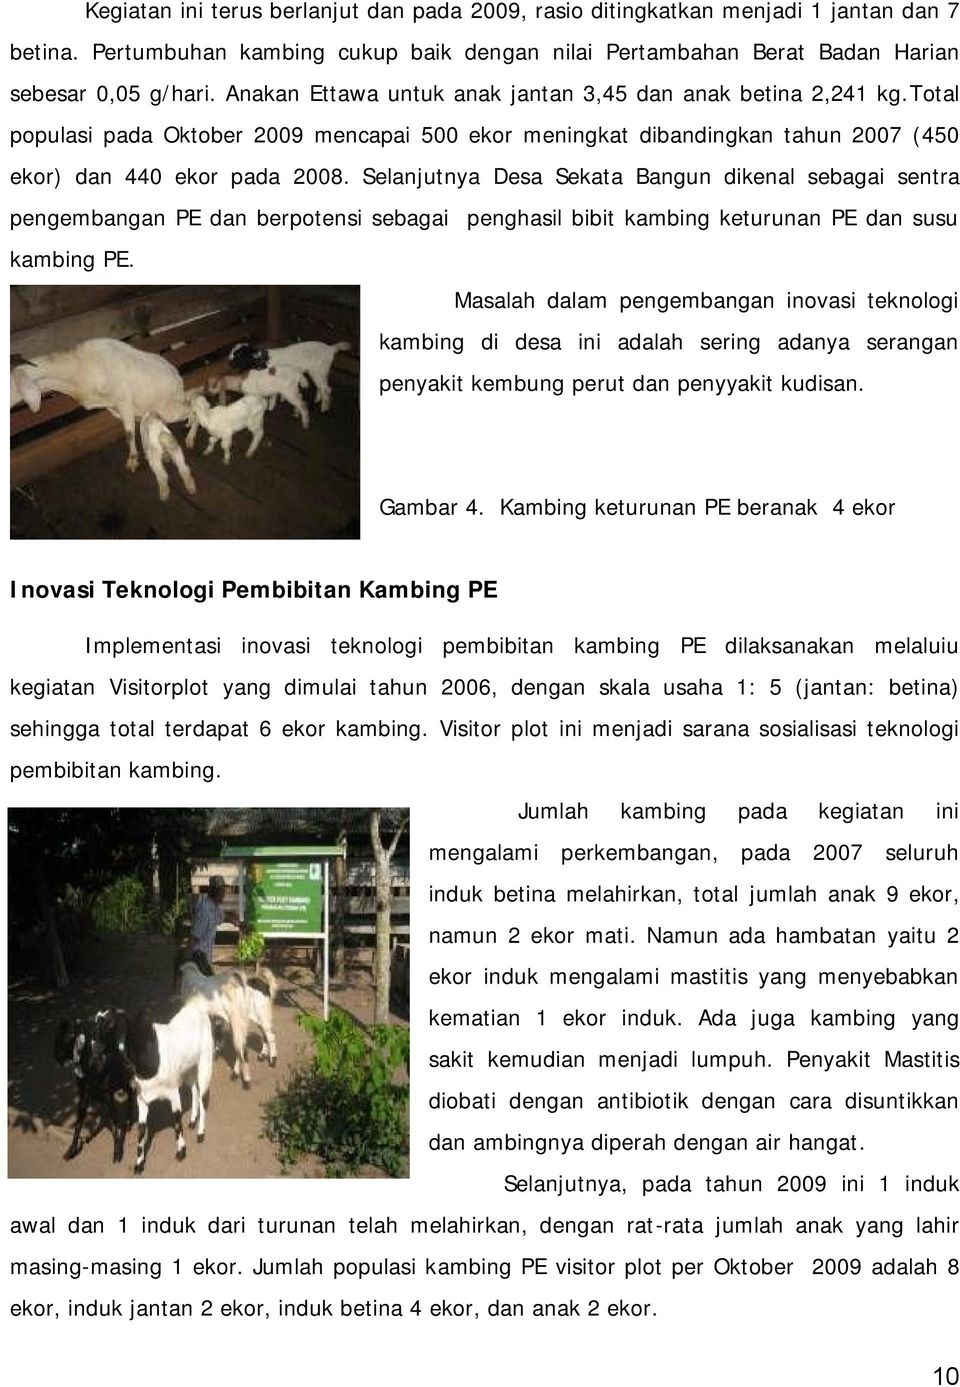 Selanjutnya Desa Sekata Bangun dikenal sebagai sentra pengembangan PE dan berpotensi sebagai penghasil bibit kambing keturunan PE dan susu kambing PE.